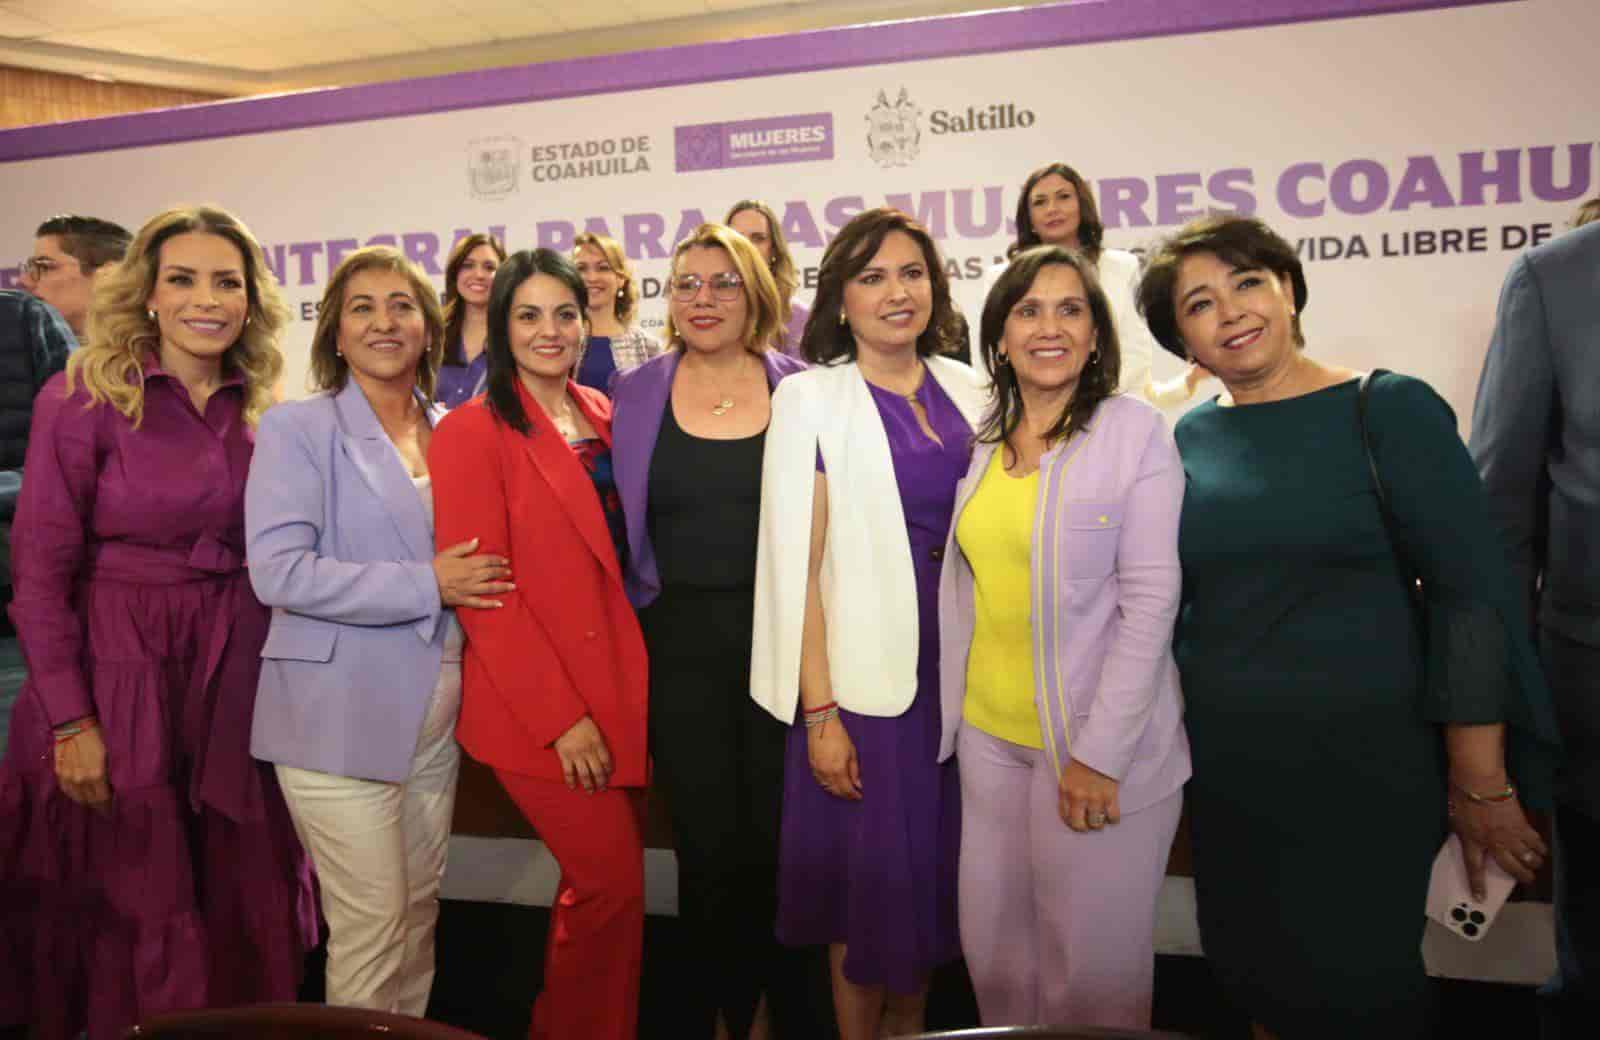 Se unen en Coahuila a favor de las mujeres